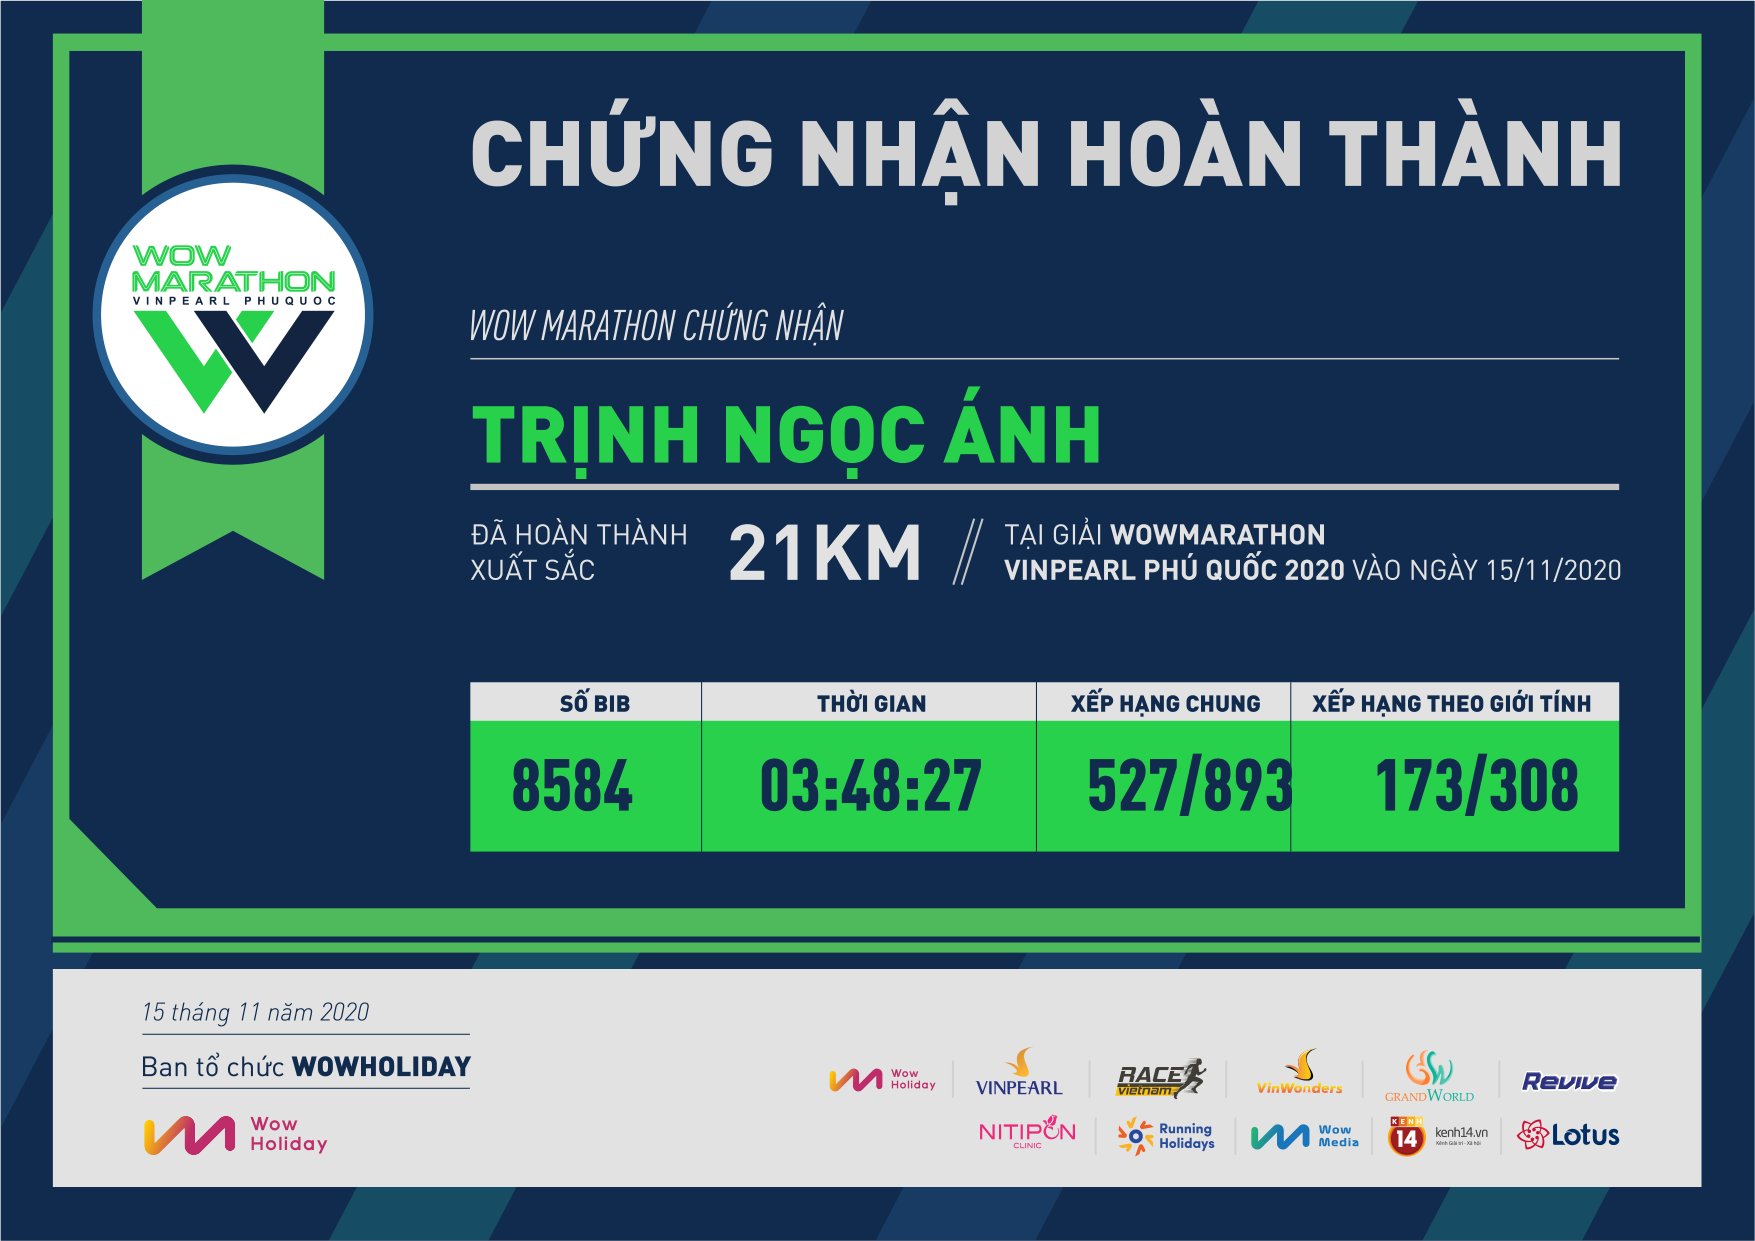 8584 - Trịnh Ngọc Ánh